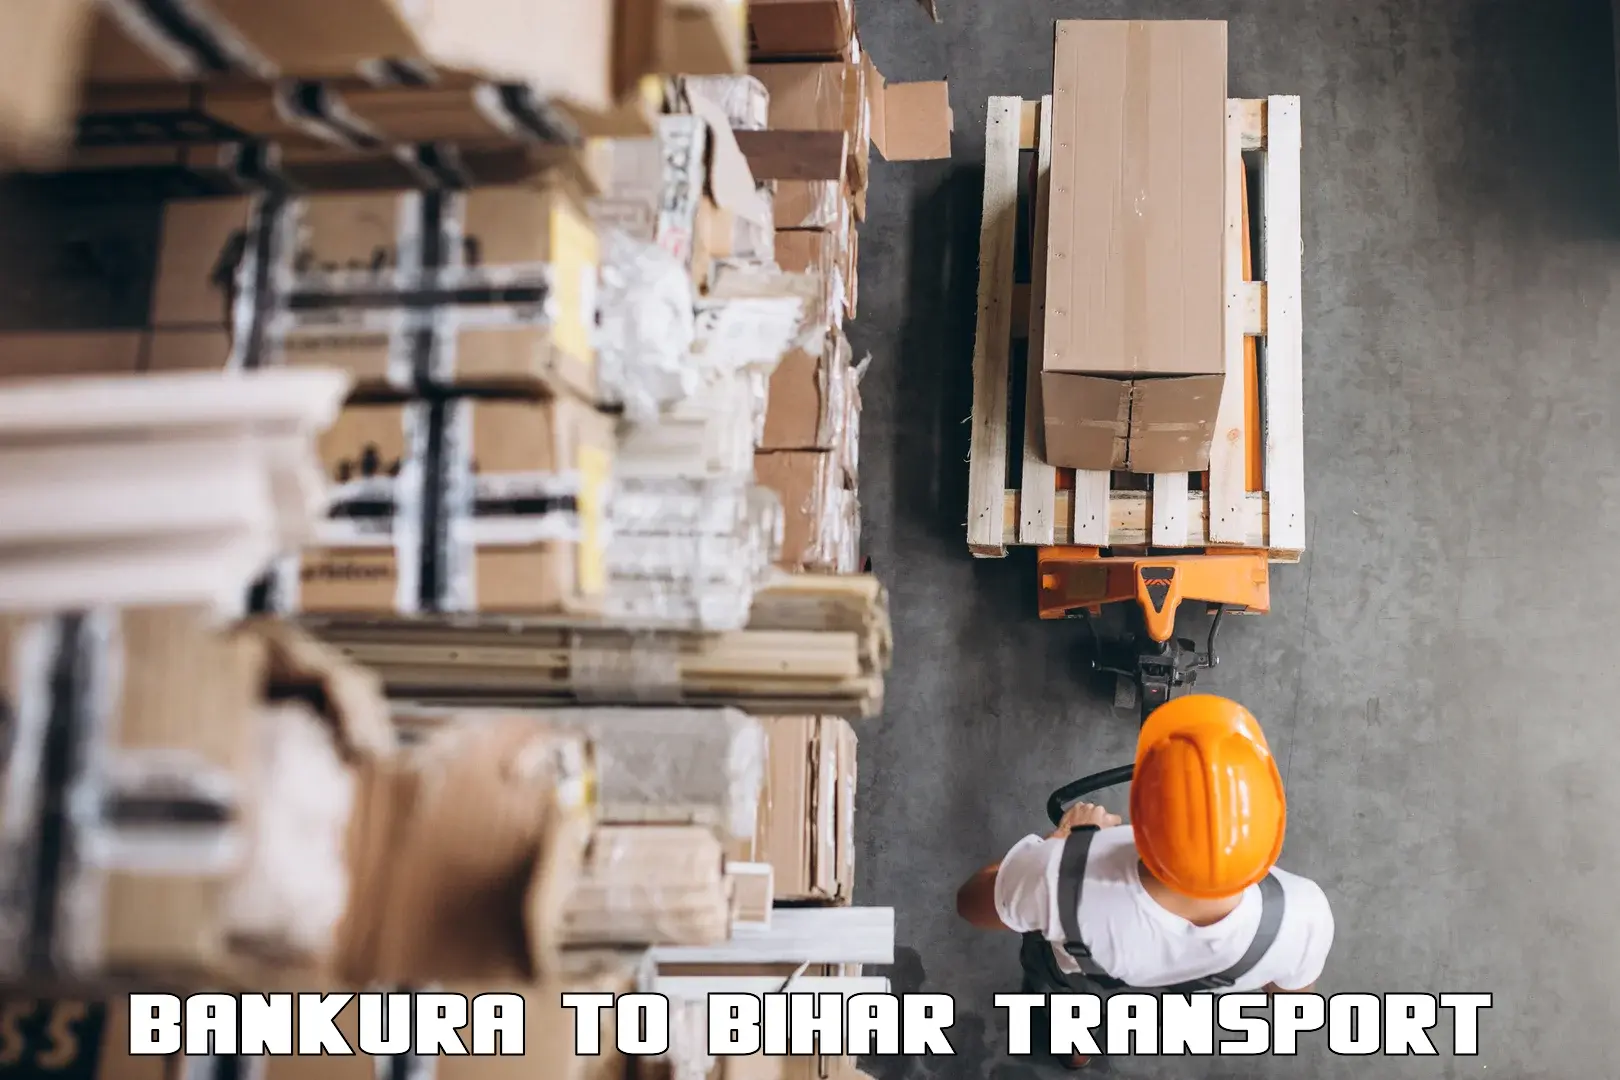 Part load transport service in India Bankura to Aurangabad Bihar